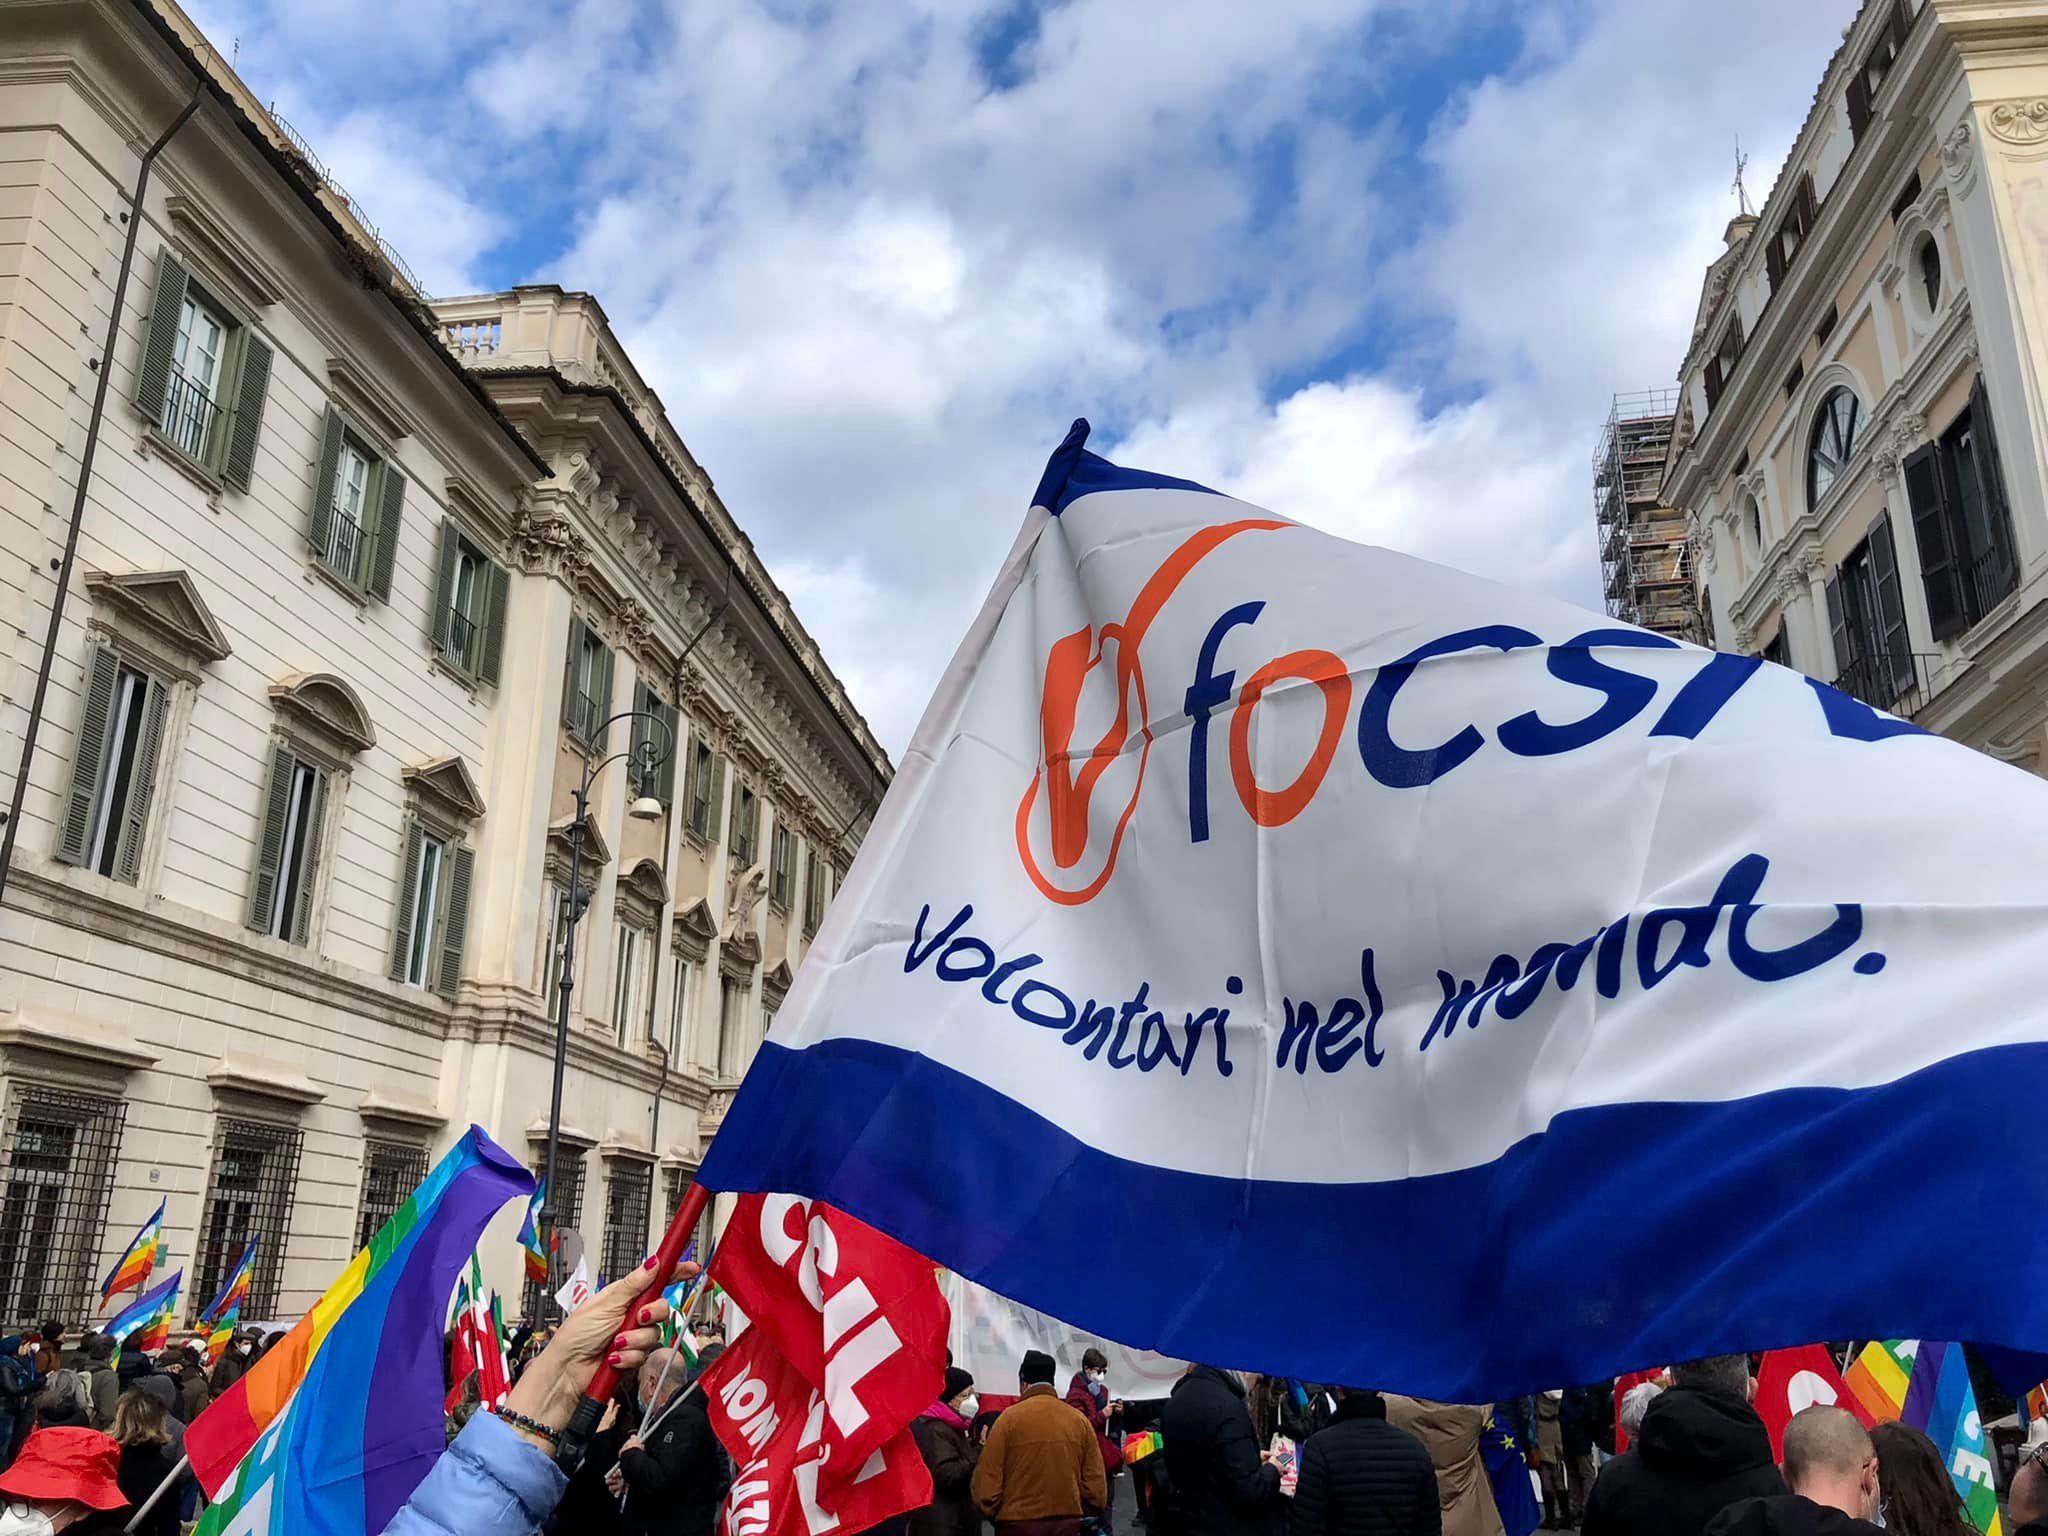 Італійські волонтери з організації FOCSIV підтримують Україну.